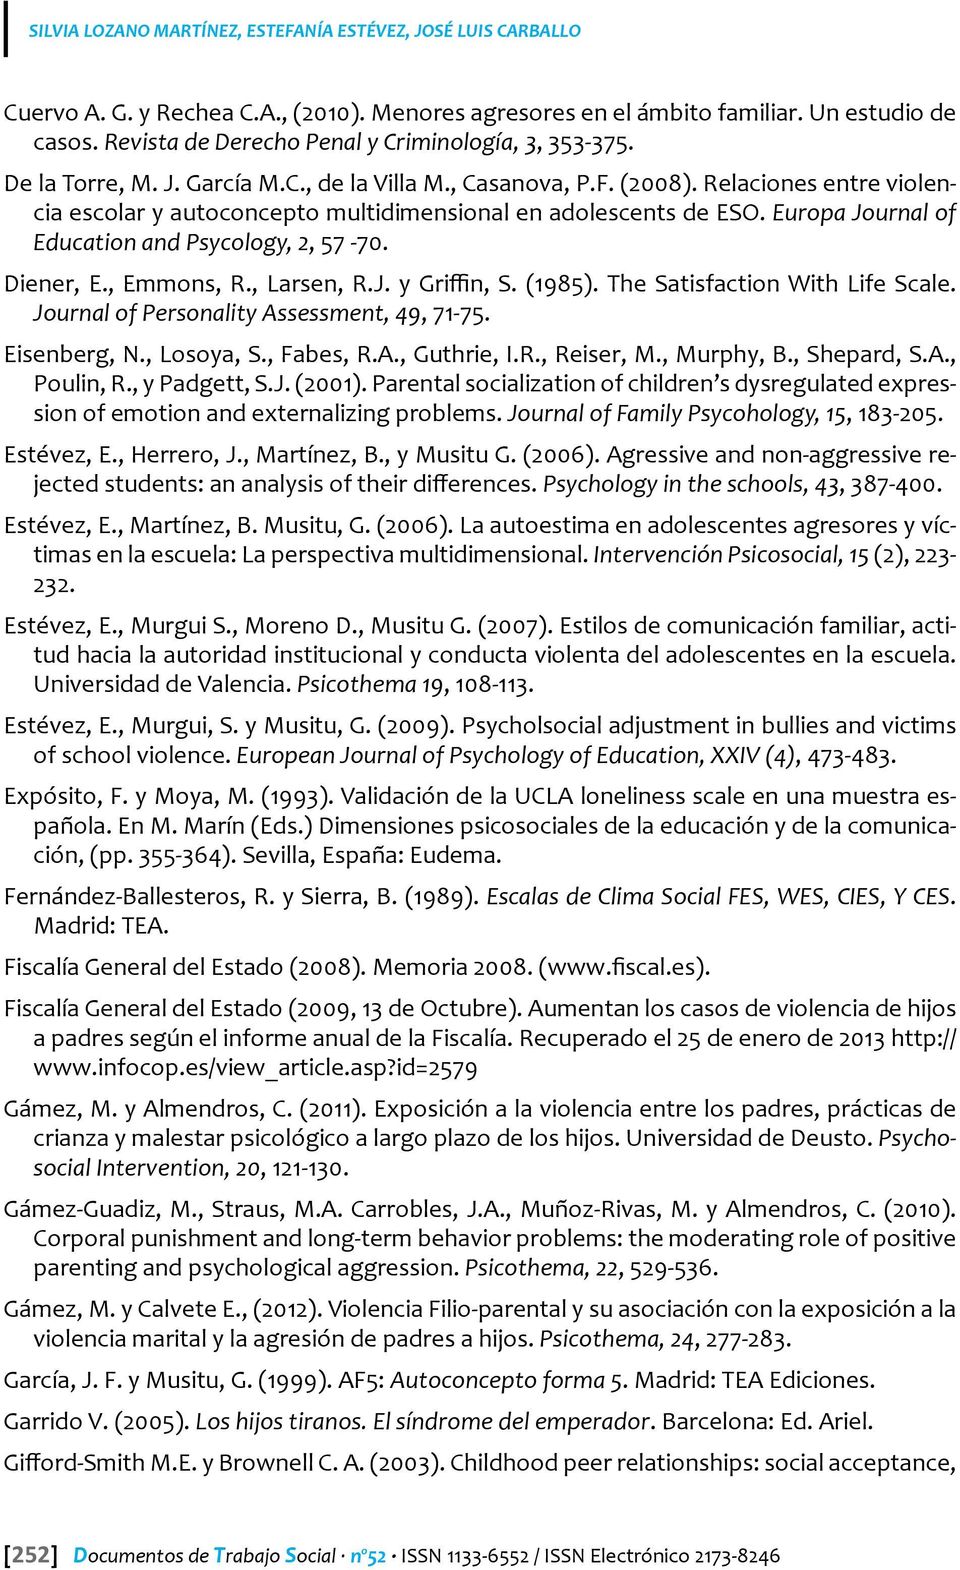 Relaciones entre violencia escolar y autoconcepto multidimensional en adolescents de ESO. Europa Journal of Education and Psycology, 2, 57-70. Diener, E., Emmons, R., Larsen, R.J. y Griffin, S.